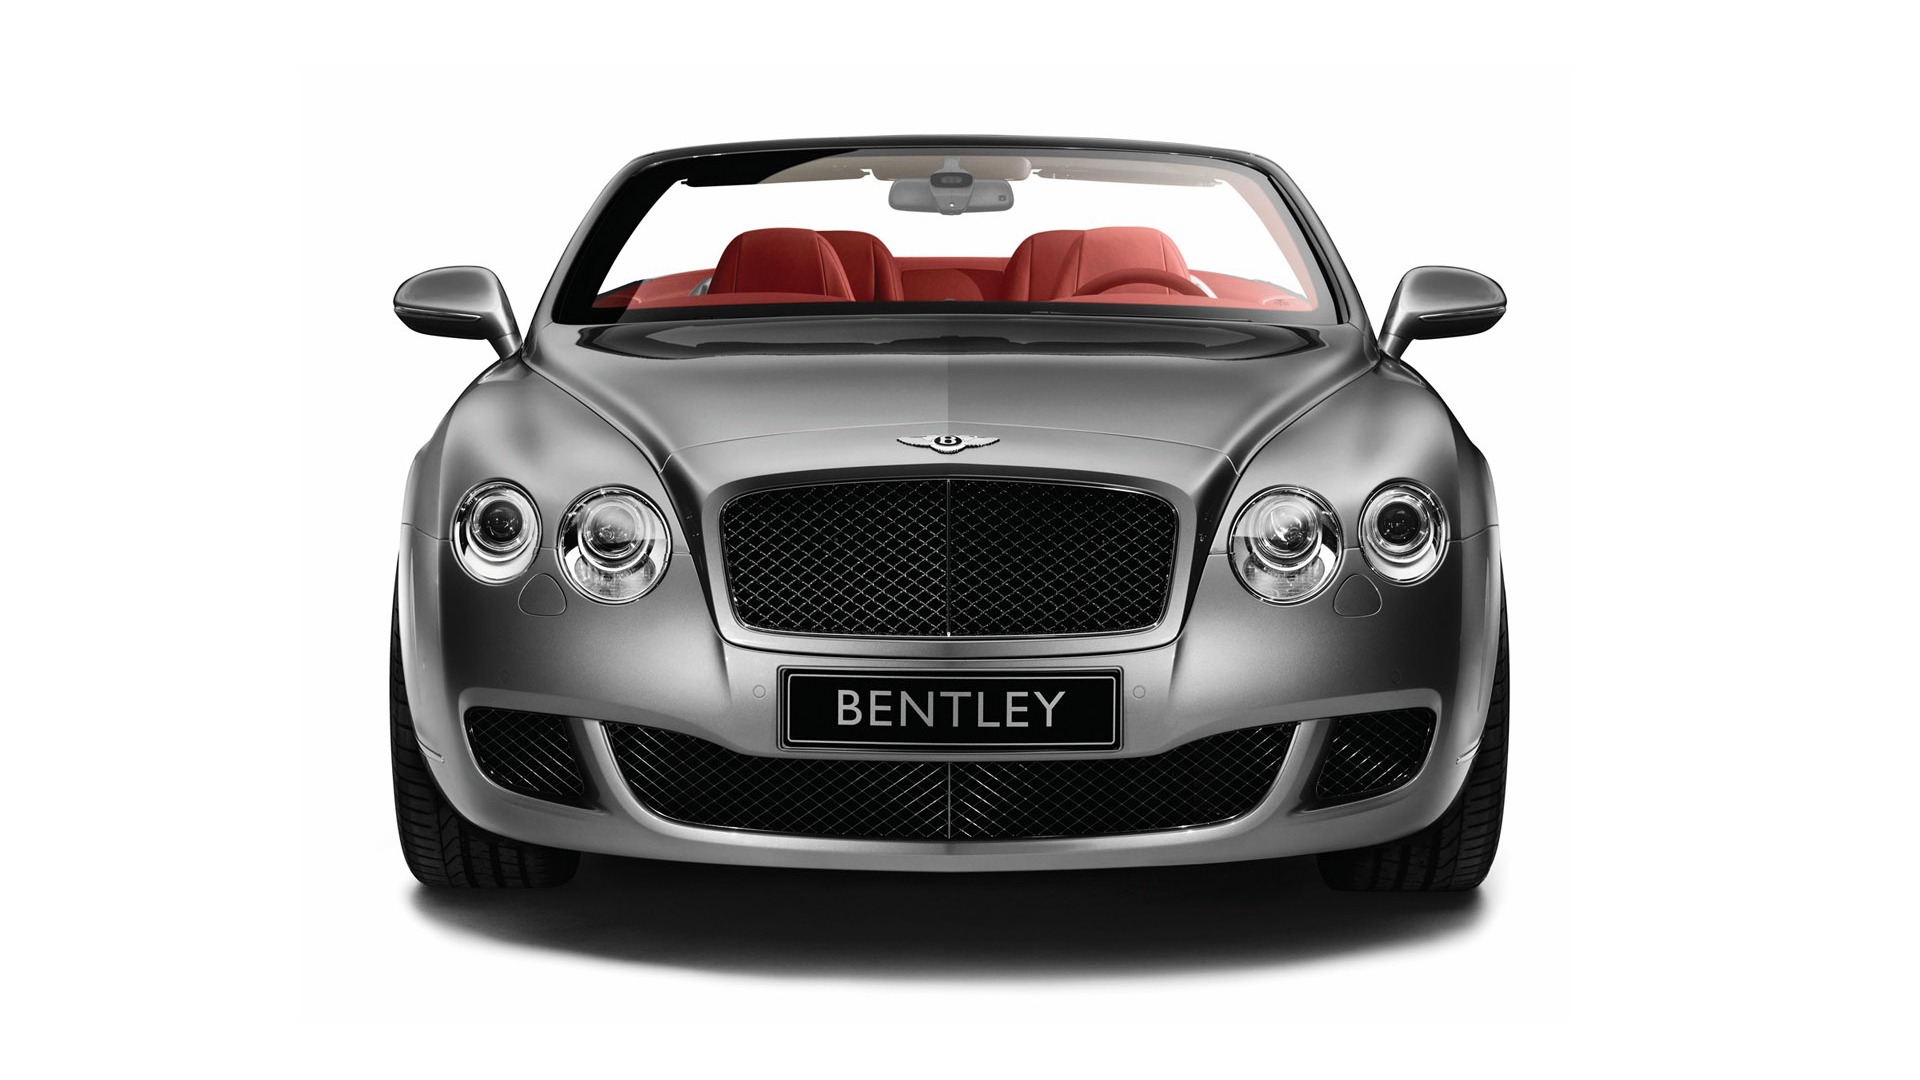 Bentley 宾利 壁纸专辑(一)20 - 1920x1080